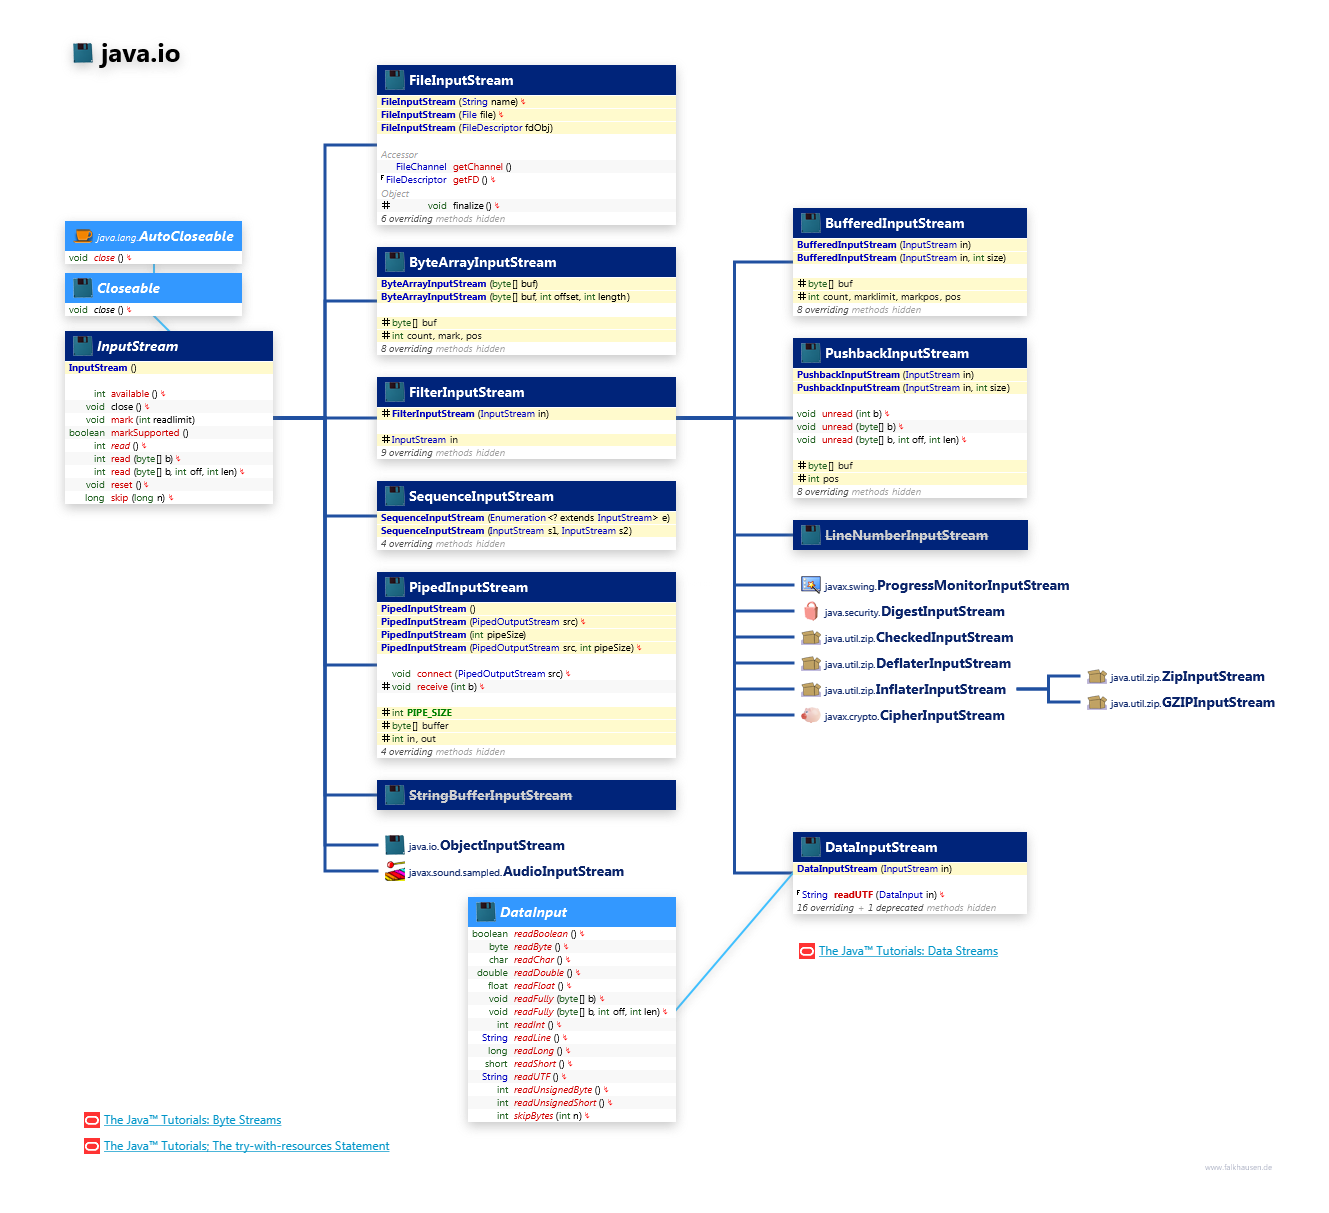 java.io InputStream class diagram and api documentation for Java 8